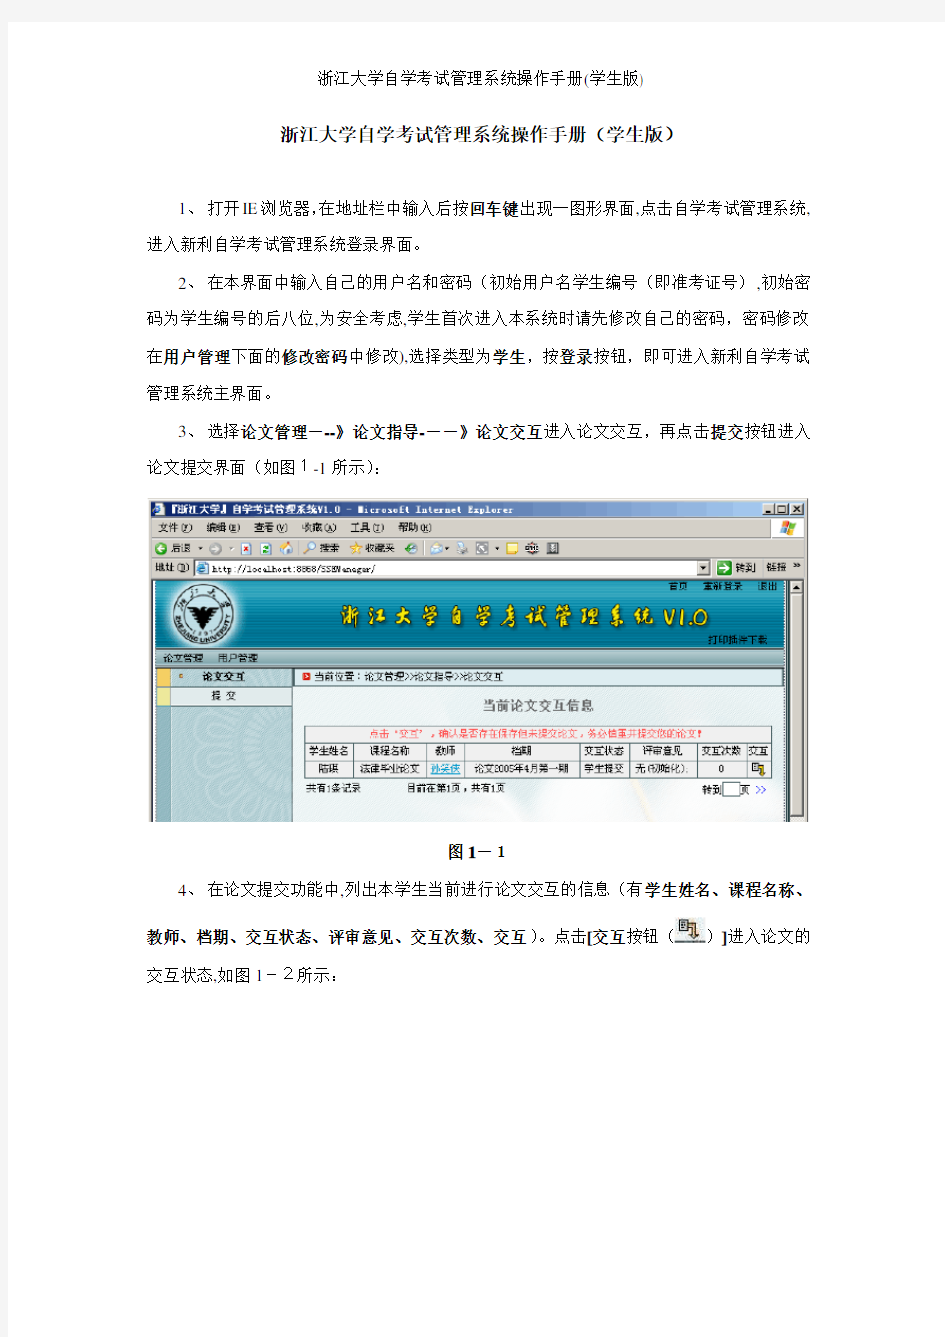 浙江大学自学考试管理系统操作手册(学生版)